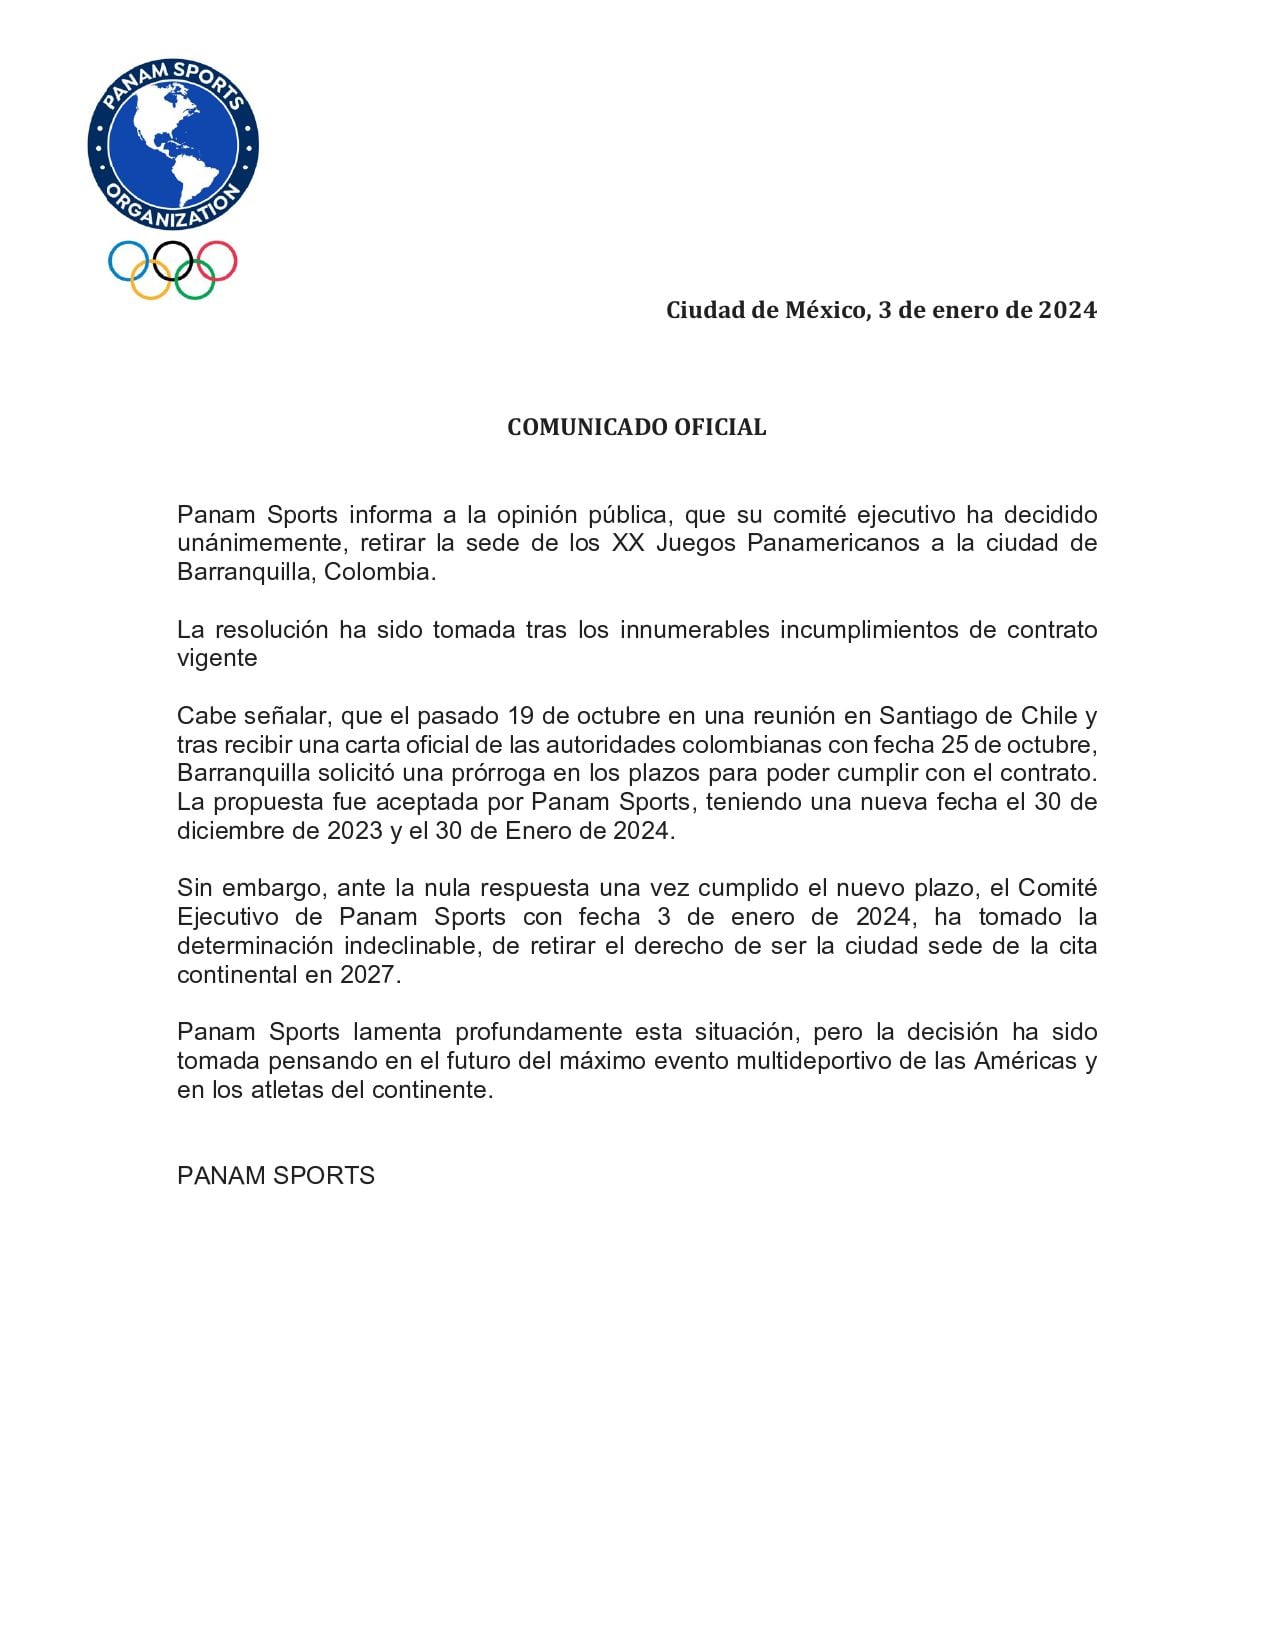 Comunicado de Panam Sports ante el grave incumplimiento de los pagos para la realización de los Juegos Panamericanos de 2027 en Barranquilla.